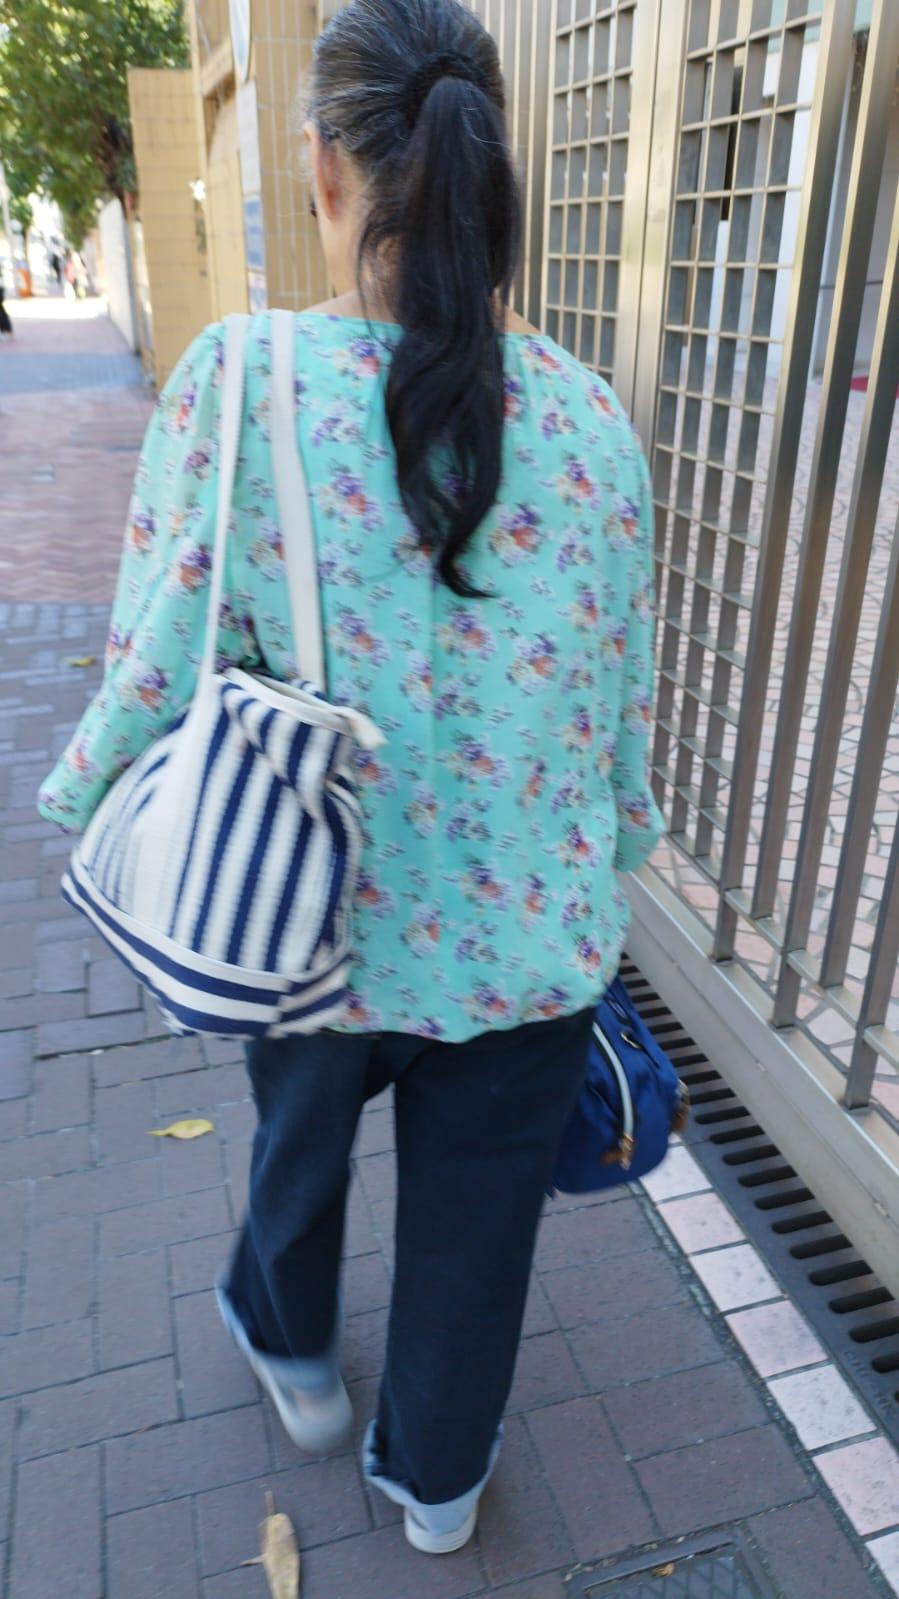 六十八岁女子李笑娟身高约一点五米，体重约五十二公斤，瘦身材，长面型，黄皮肤及蓄灰白色长发。她最后露面时身穿蓝色长袖碎花上衣、蓝色长裤、灰色鞋及携有一个蓝色手袋。